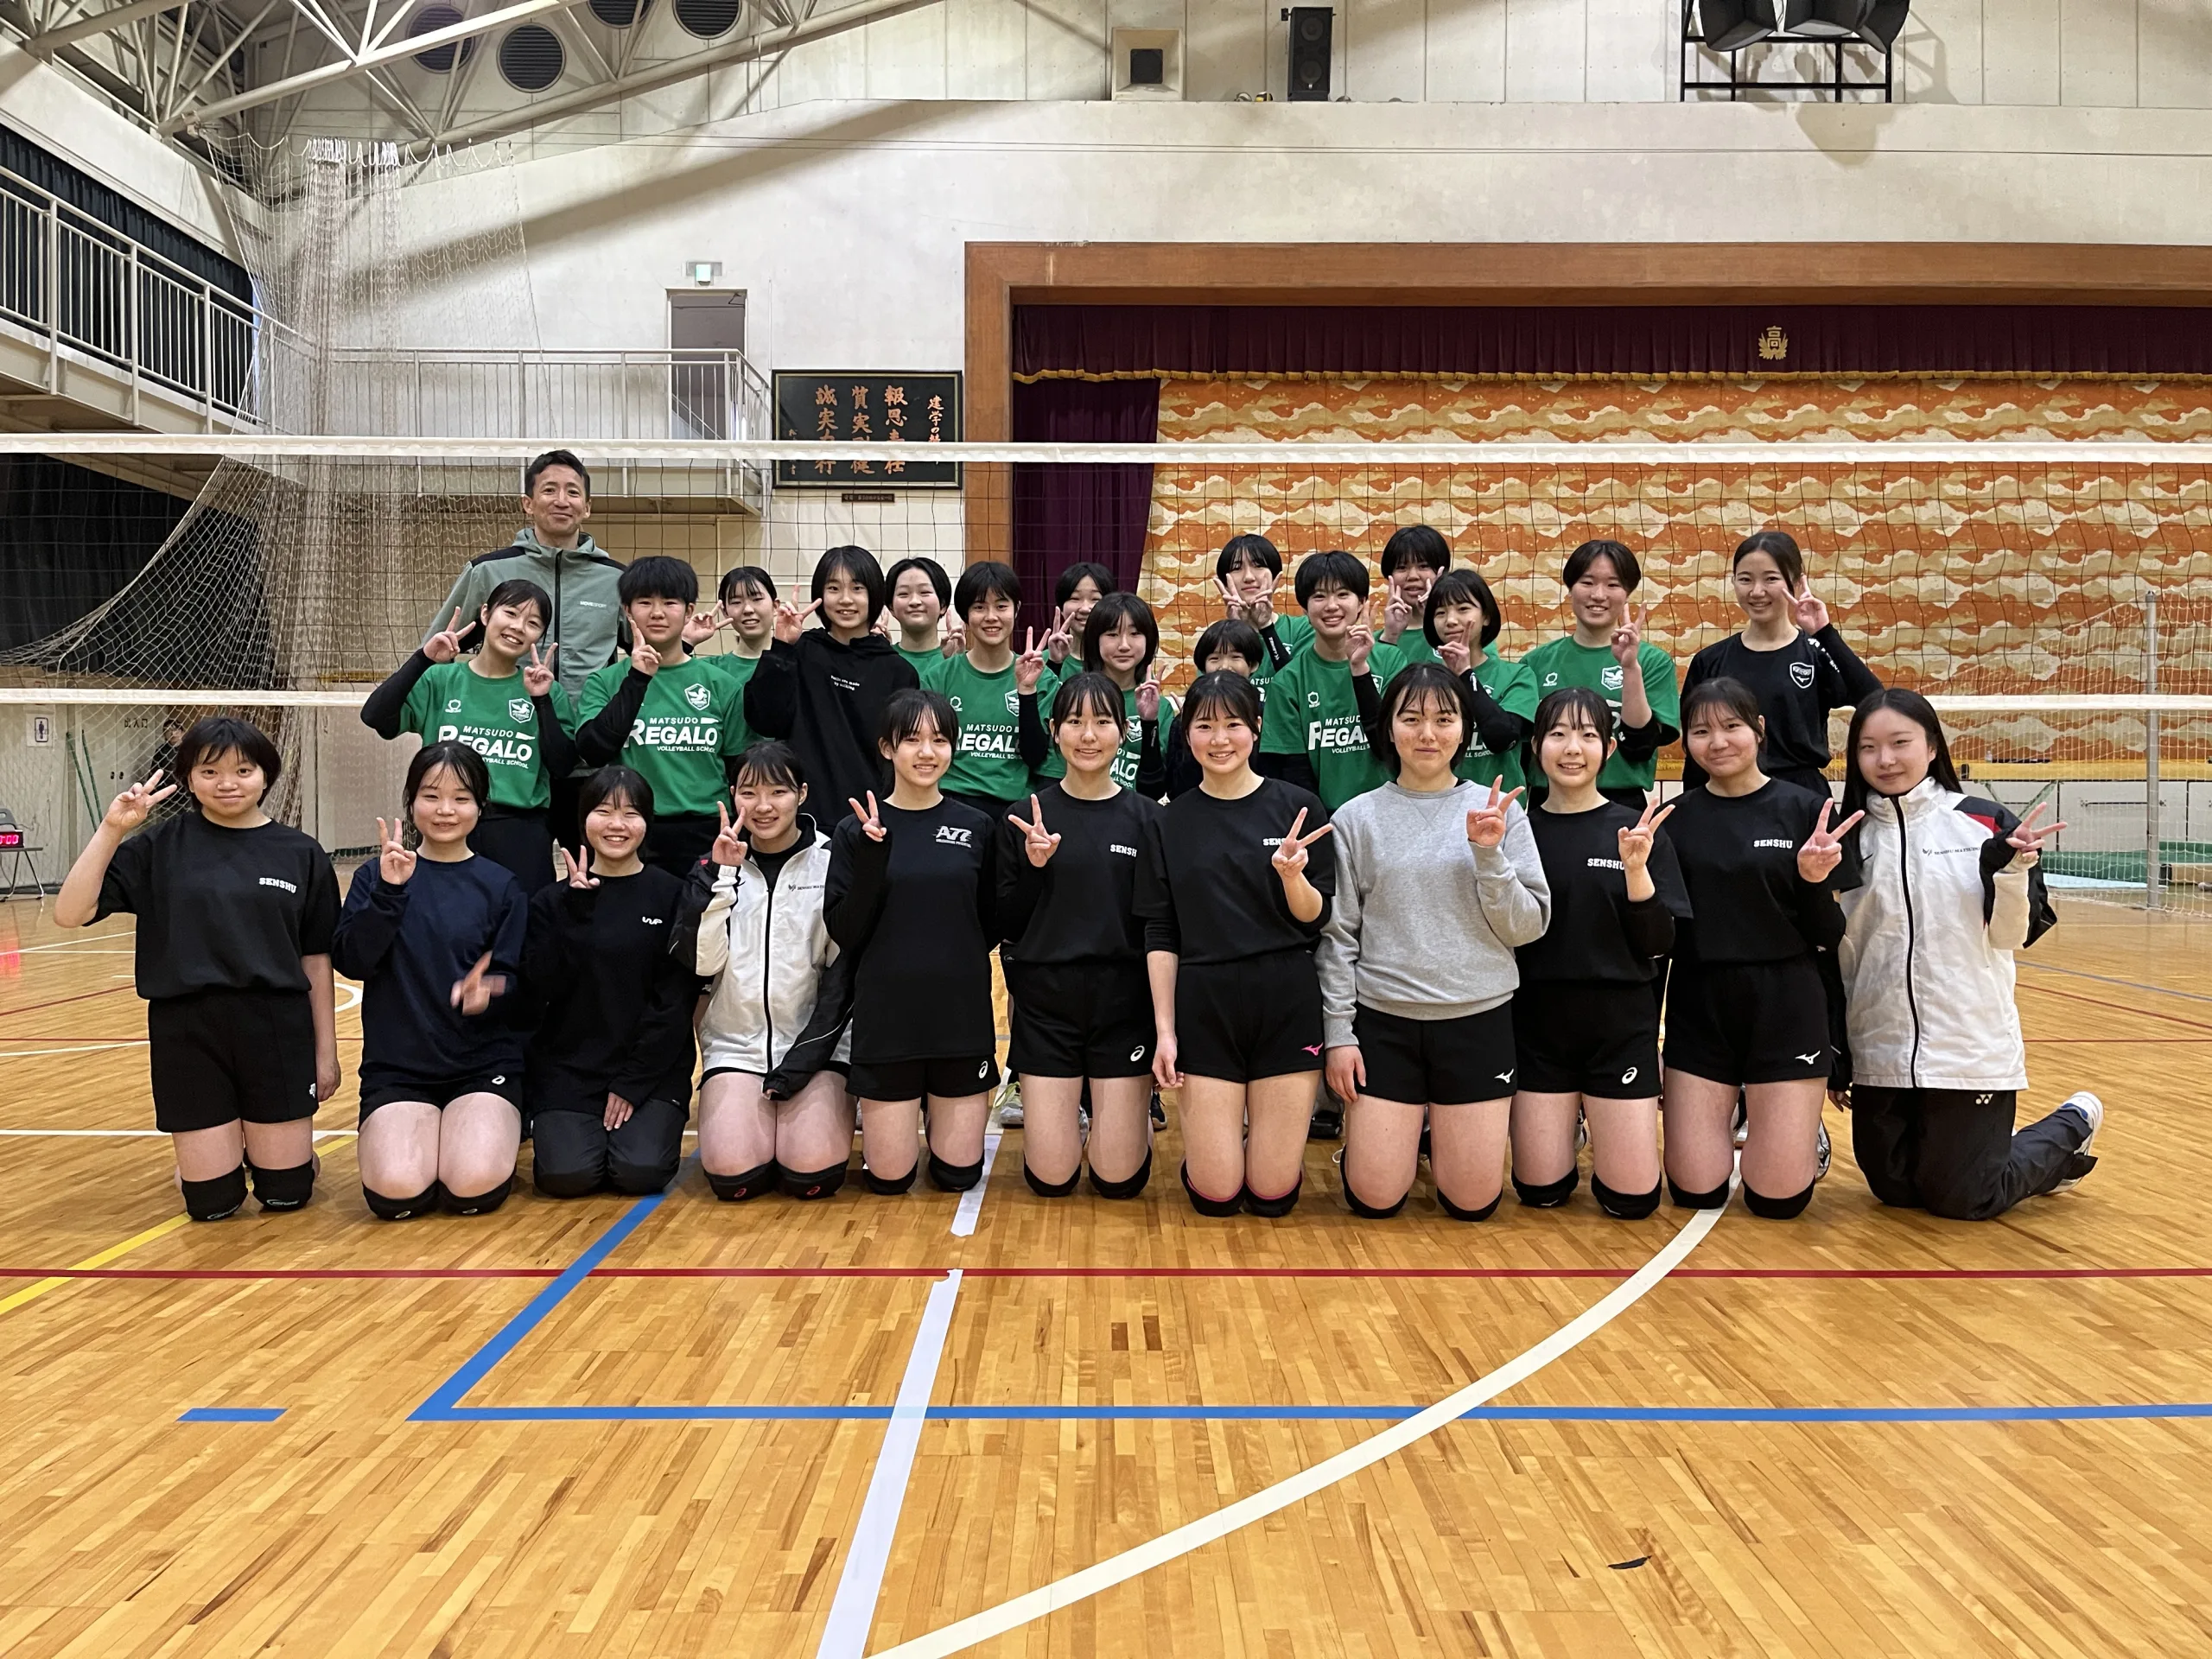 専修大松戸高校女子バレーボール部と練習試合をする松戸レガロのスクール生